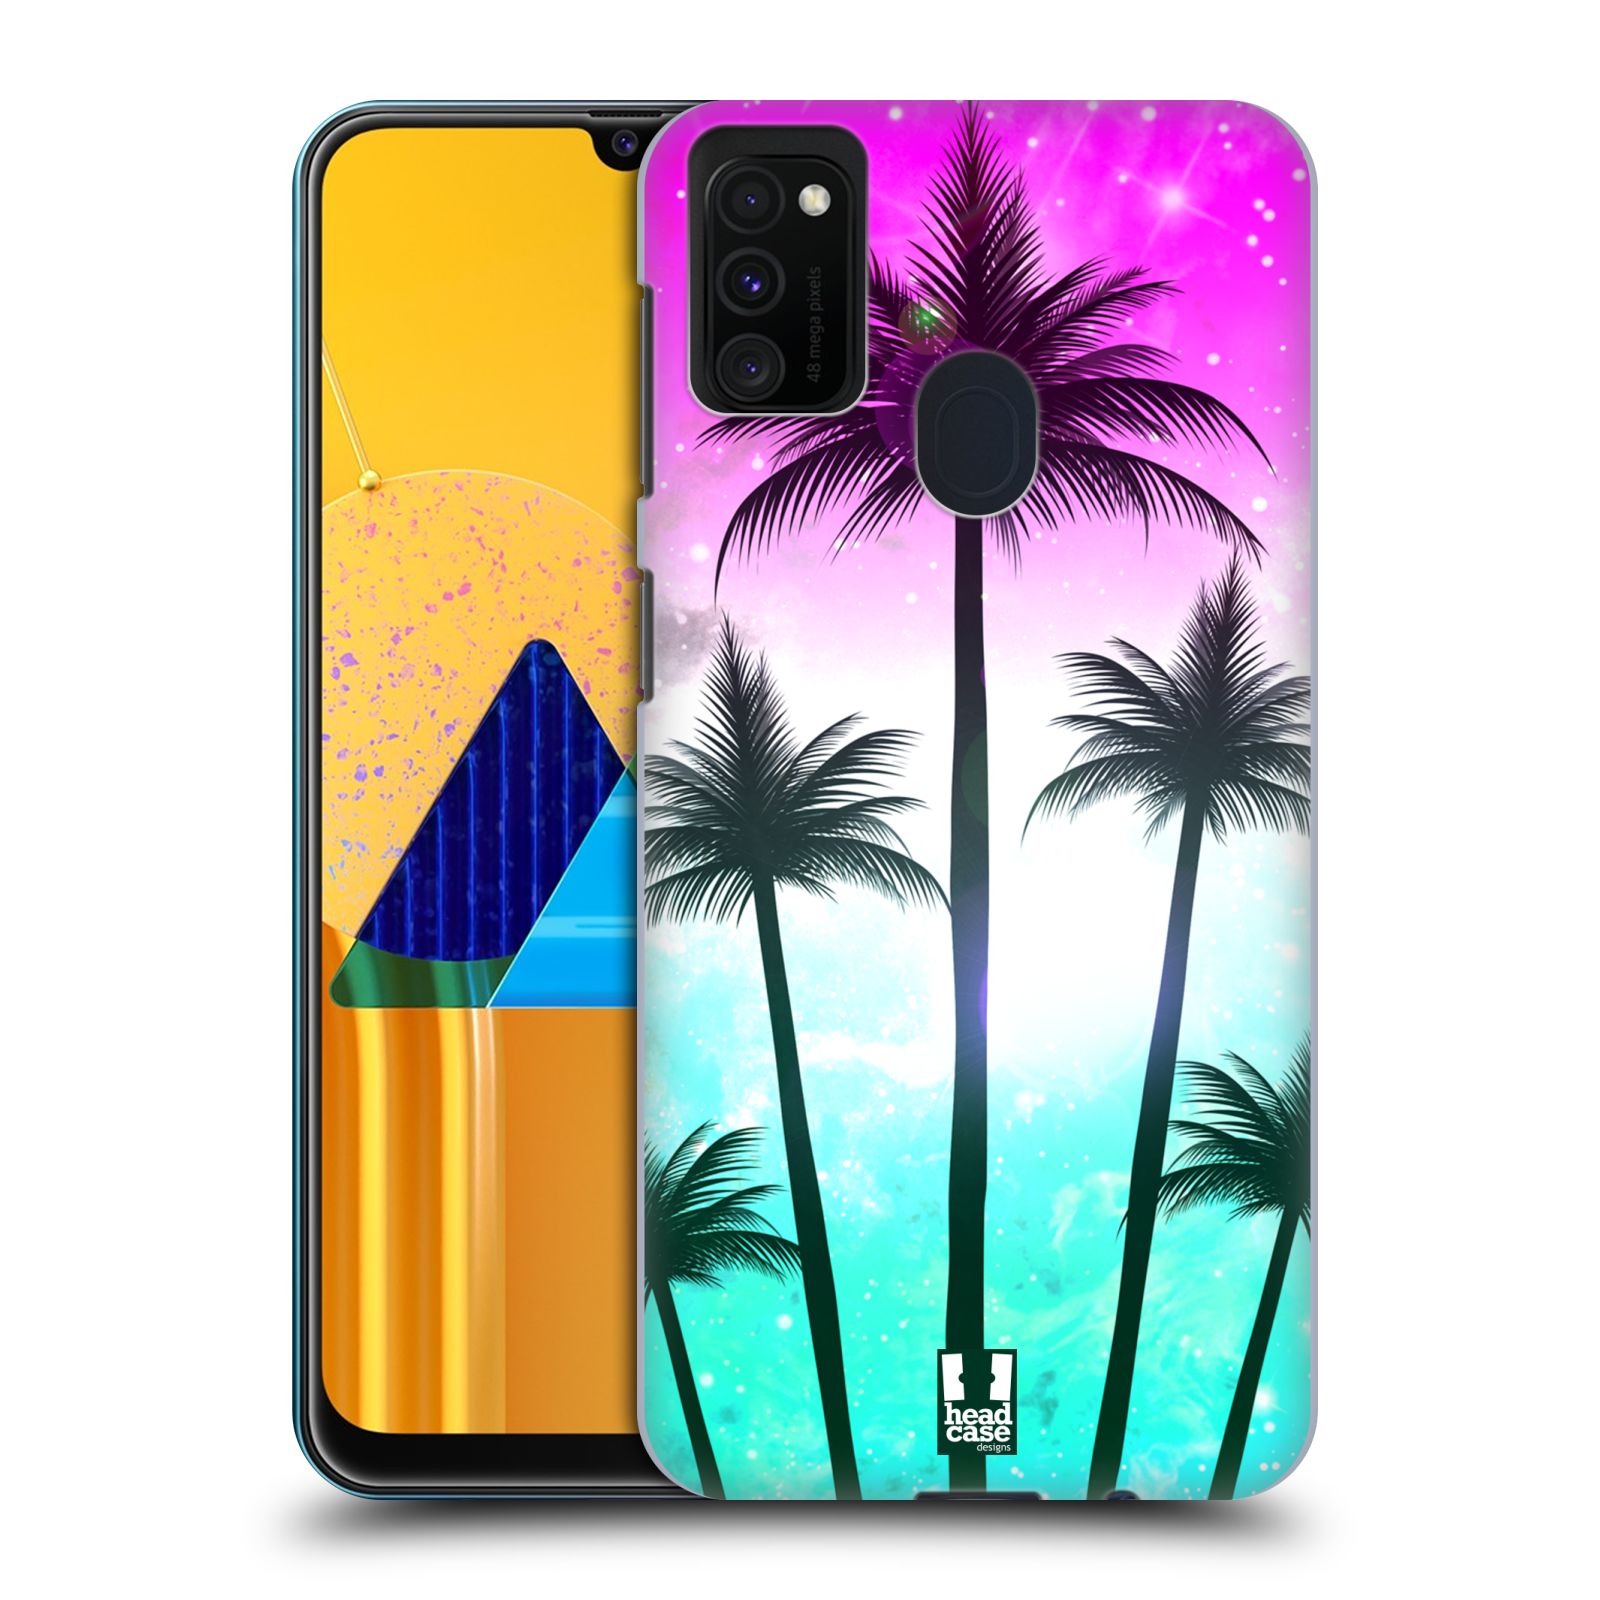 Zadní kryt na mobil Samsung Galaxy M21 vzor Kreslený motiv silueta moře a palmy RŮŽOVÁ A TYRKYS